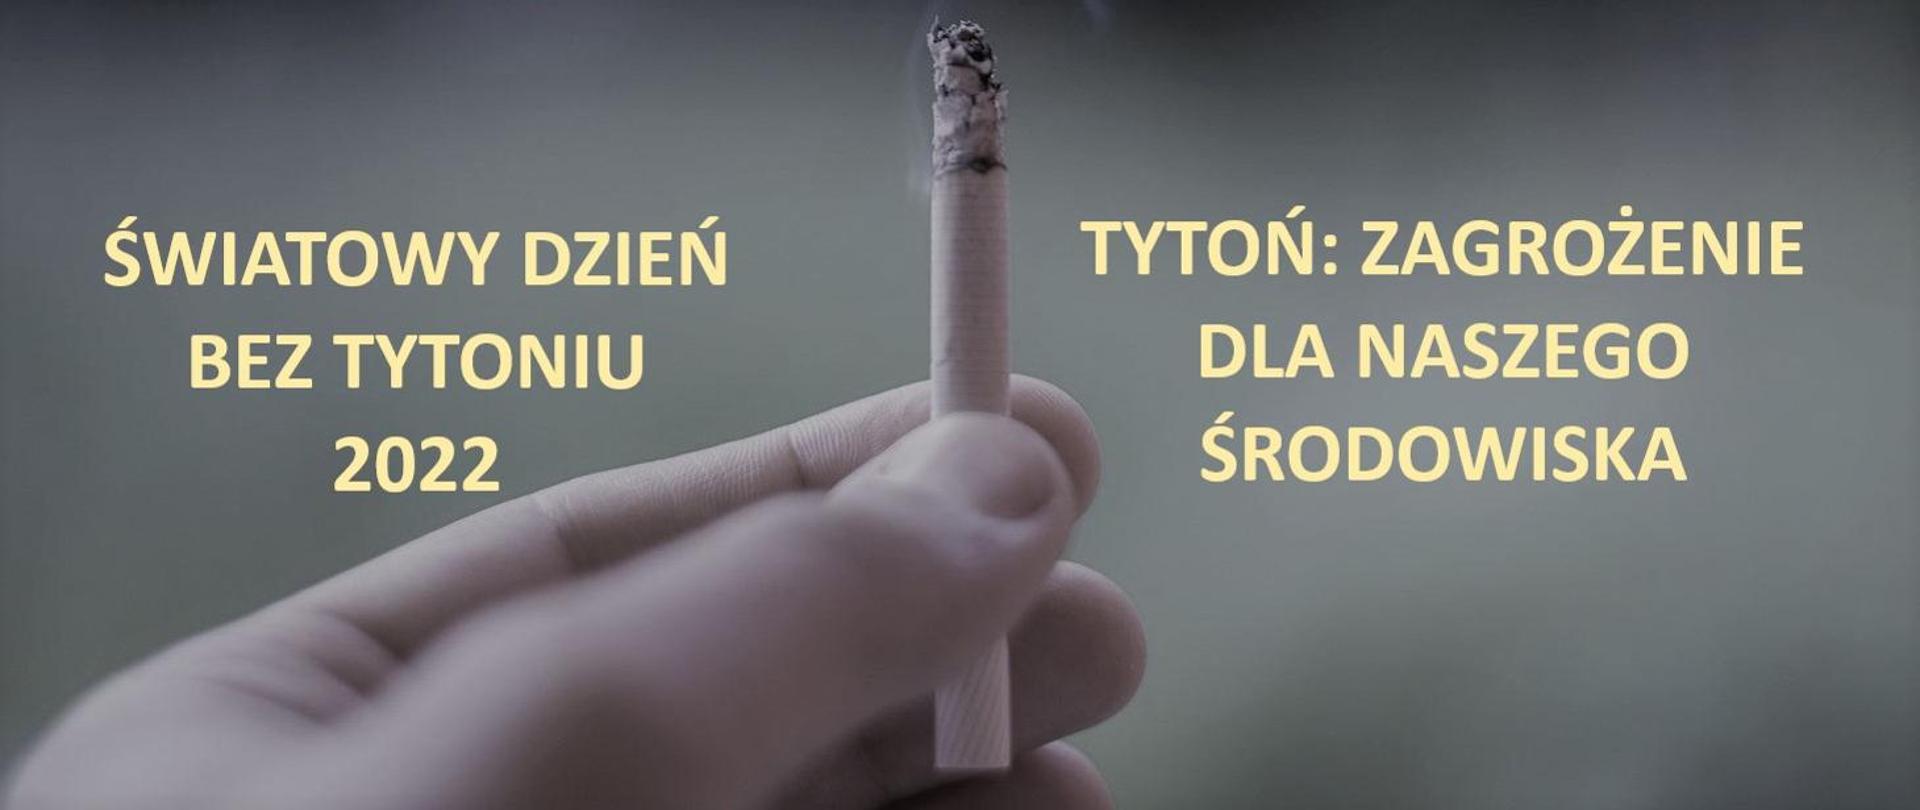 Światowy Dzień Bez Tytoniu 2022